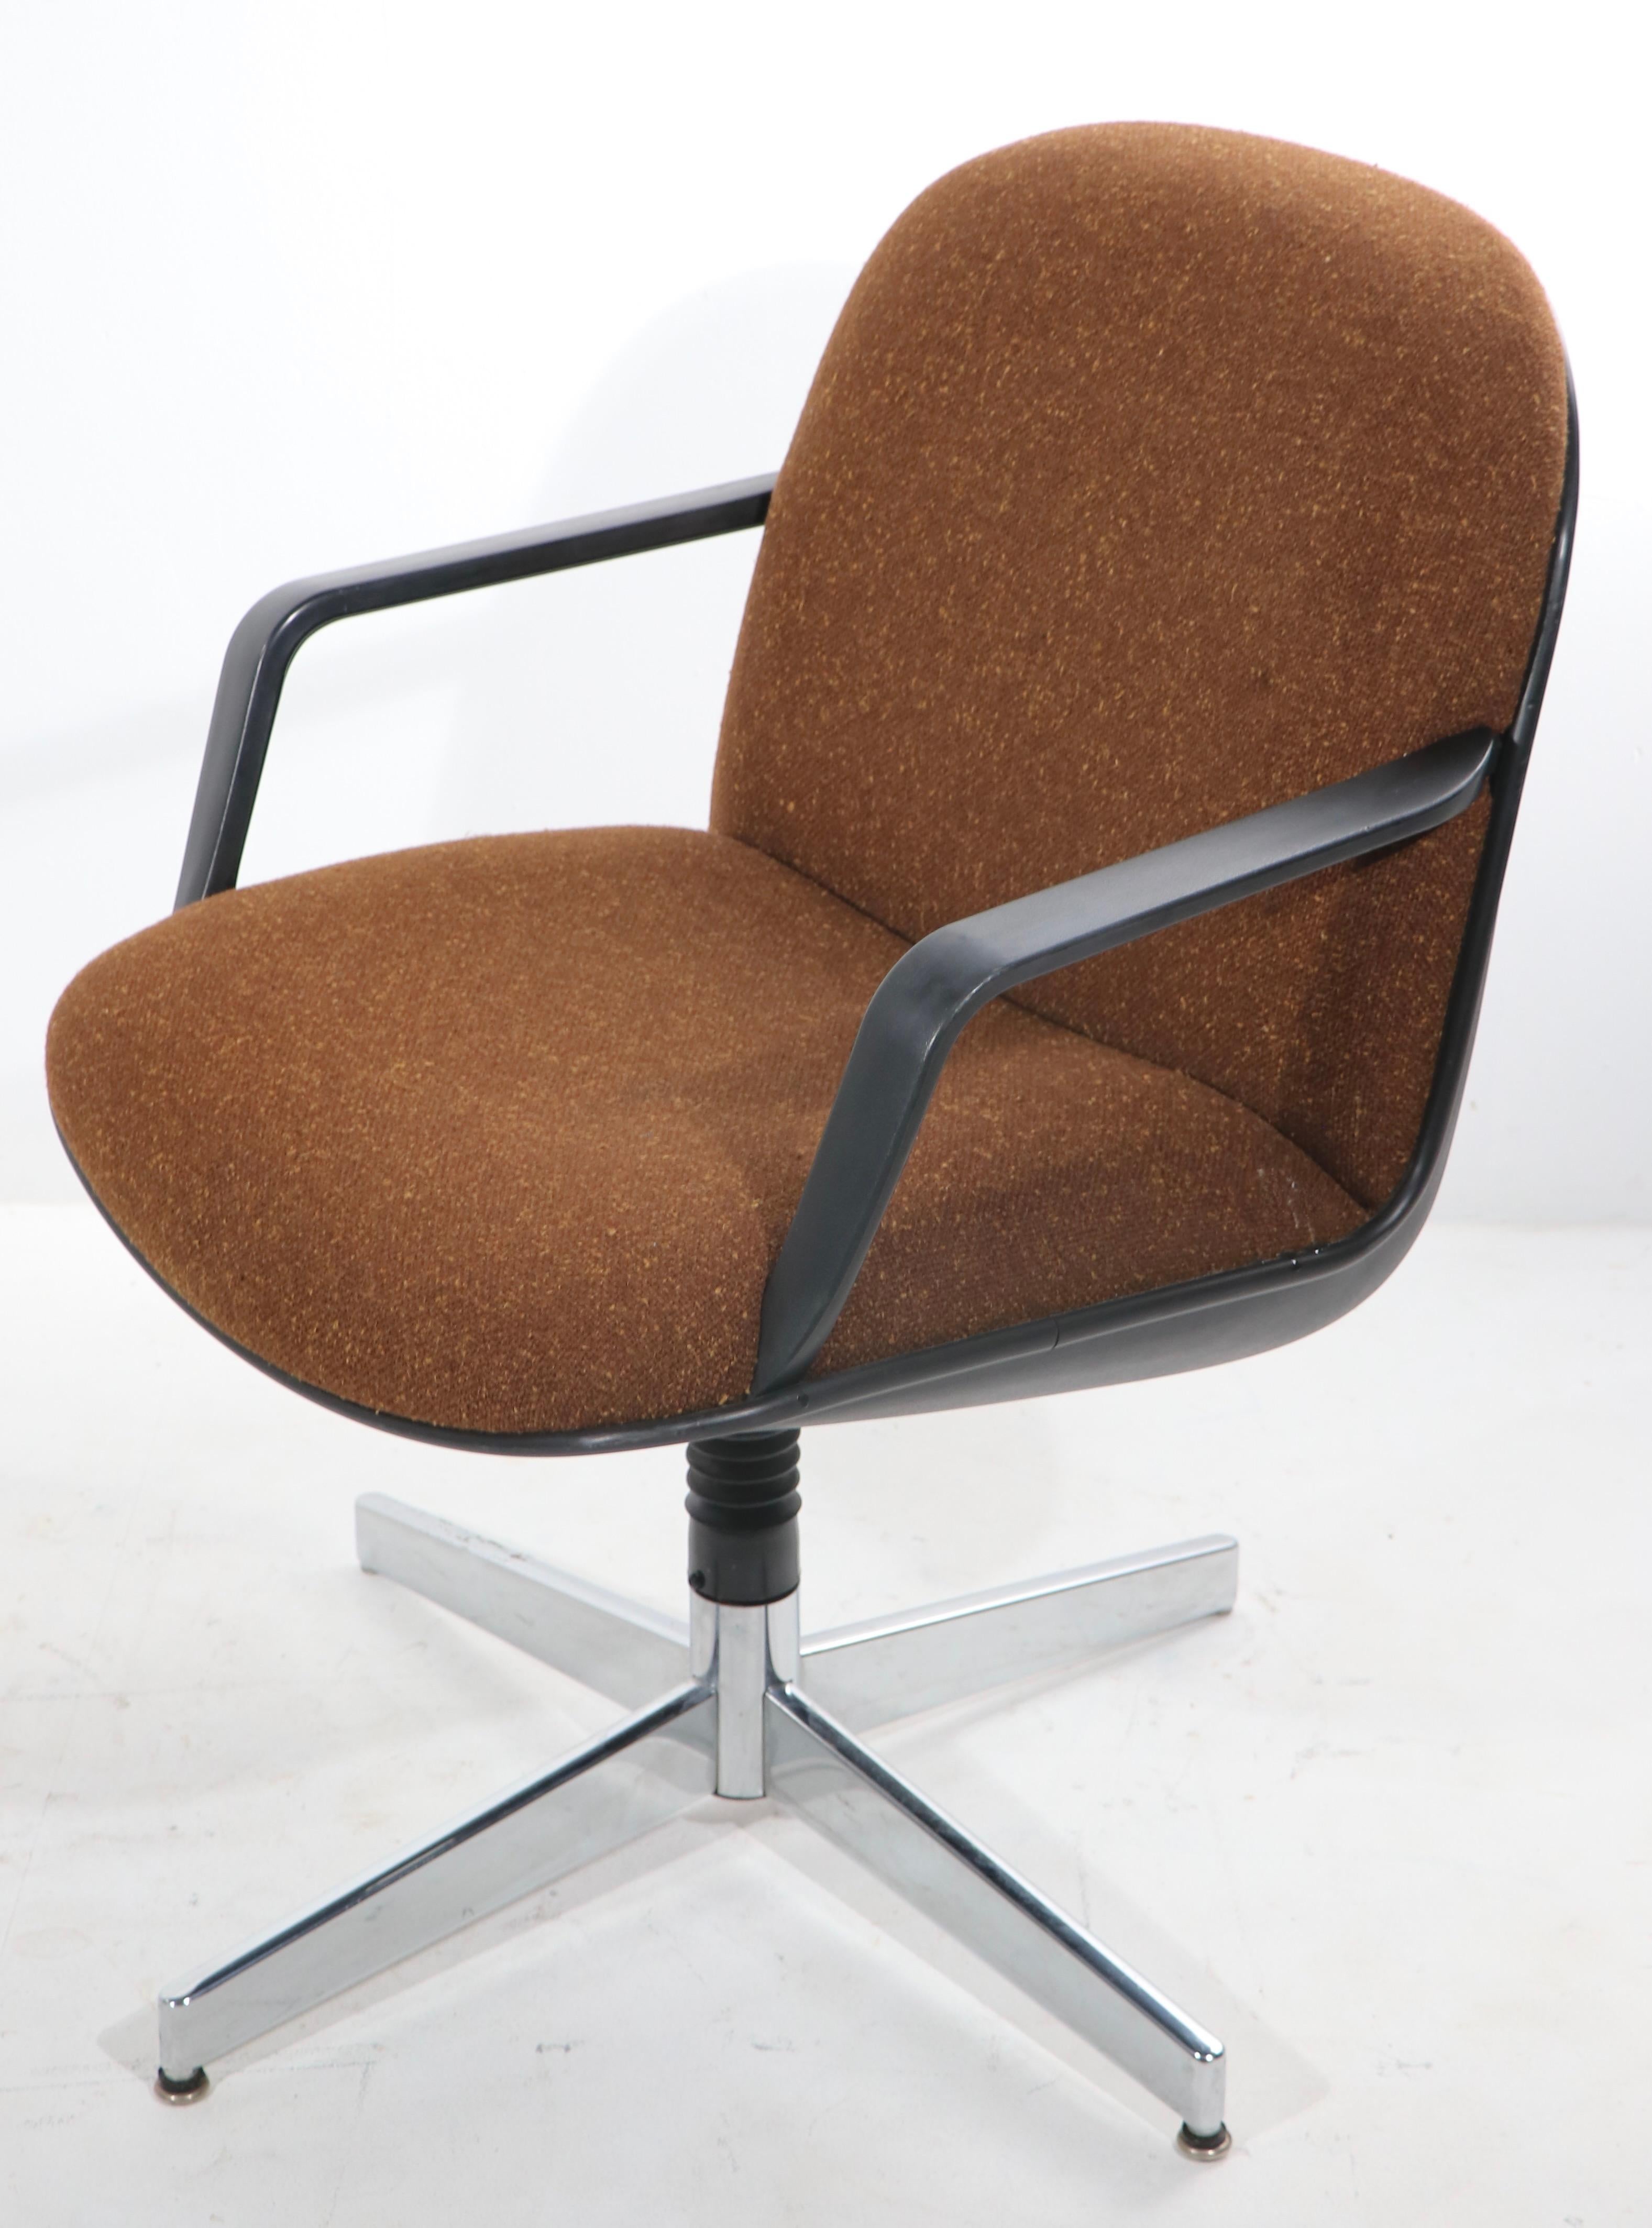 Stilvolle ergonomische Design-Drehsessel, perfekt für den kommerziellen Einsatz, Schreibtisch oder Konferenzraum, kann auch als Wohnsitz verwendet werden als gut. Hergestellt vom renommierten Hersteller HON, im Stil der legendären Pollock for Knoll